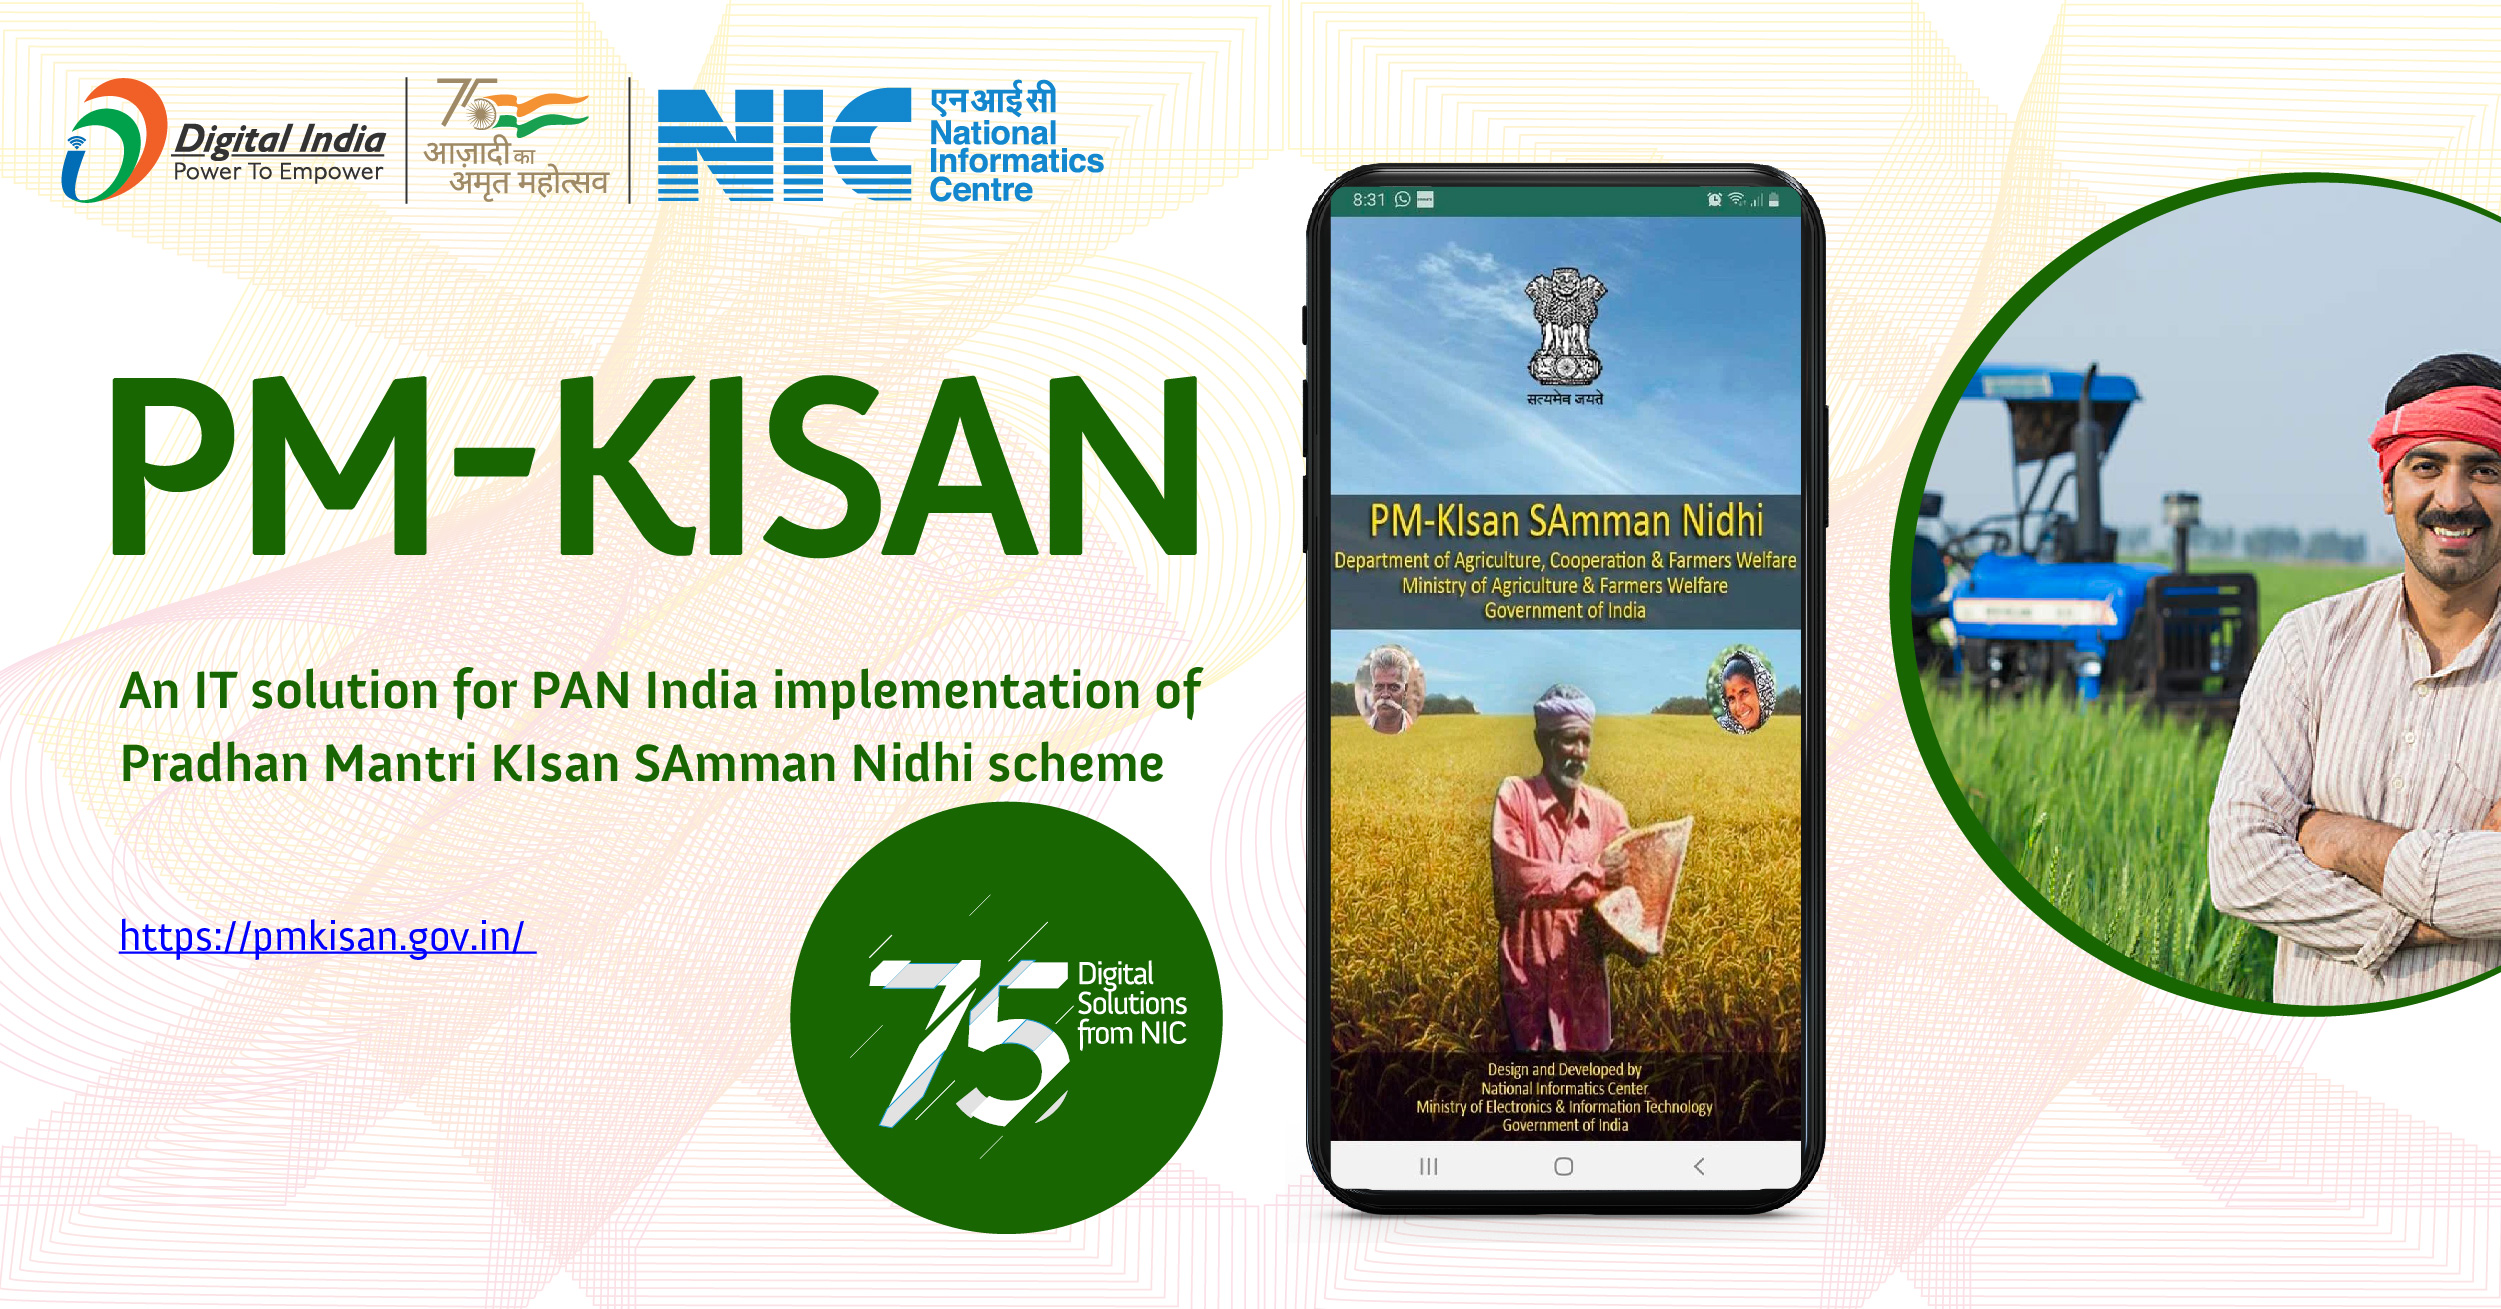 PMKisan - PMKisan योजना के तहत किसानों के खातों में सीधे धन हस्तांतरित करने के लिए एक एंड-टू-एंड प्रौद्योगिकी समाधान